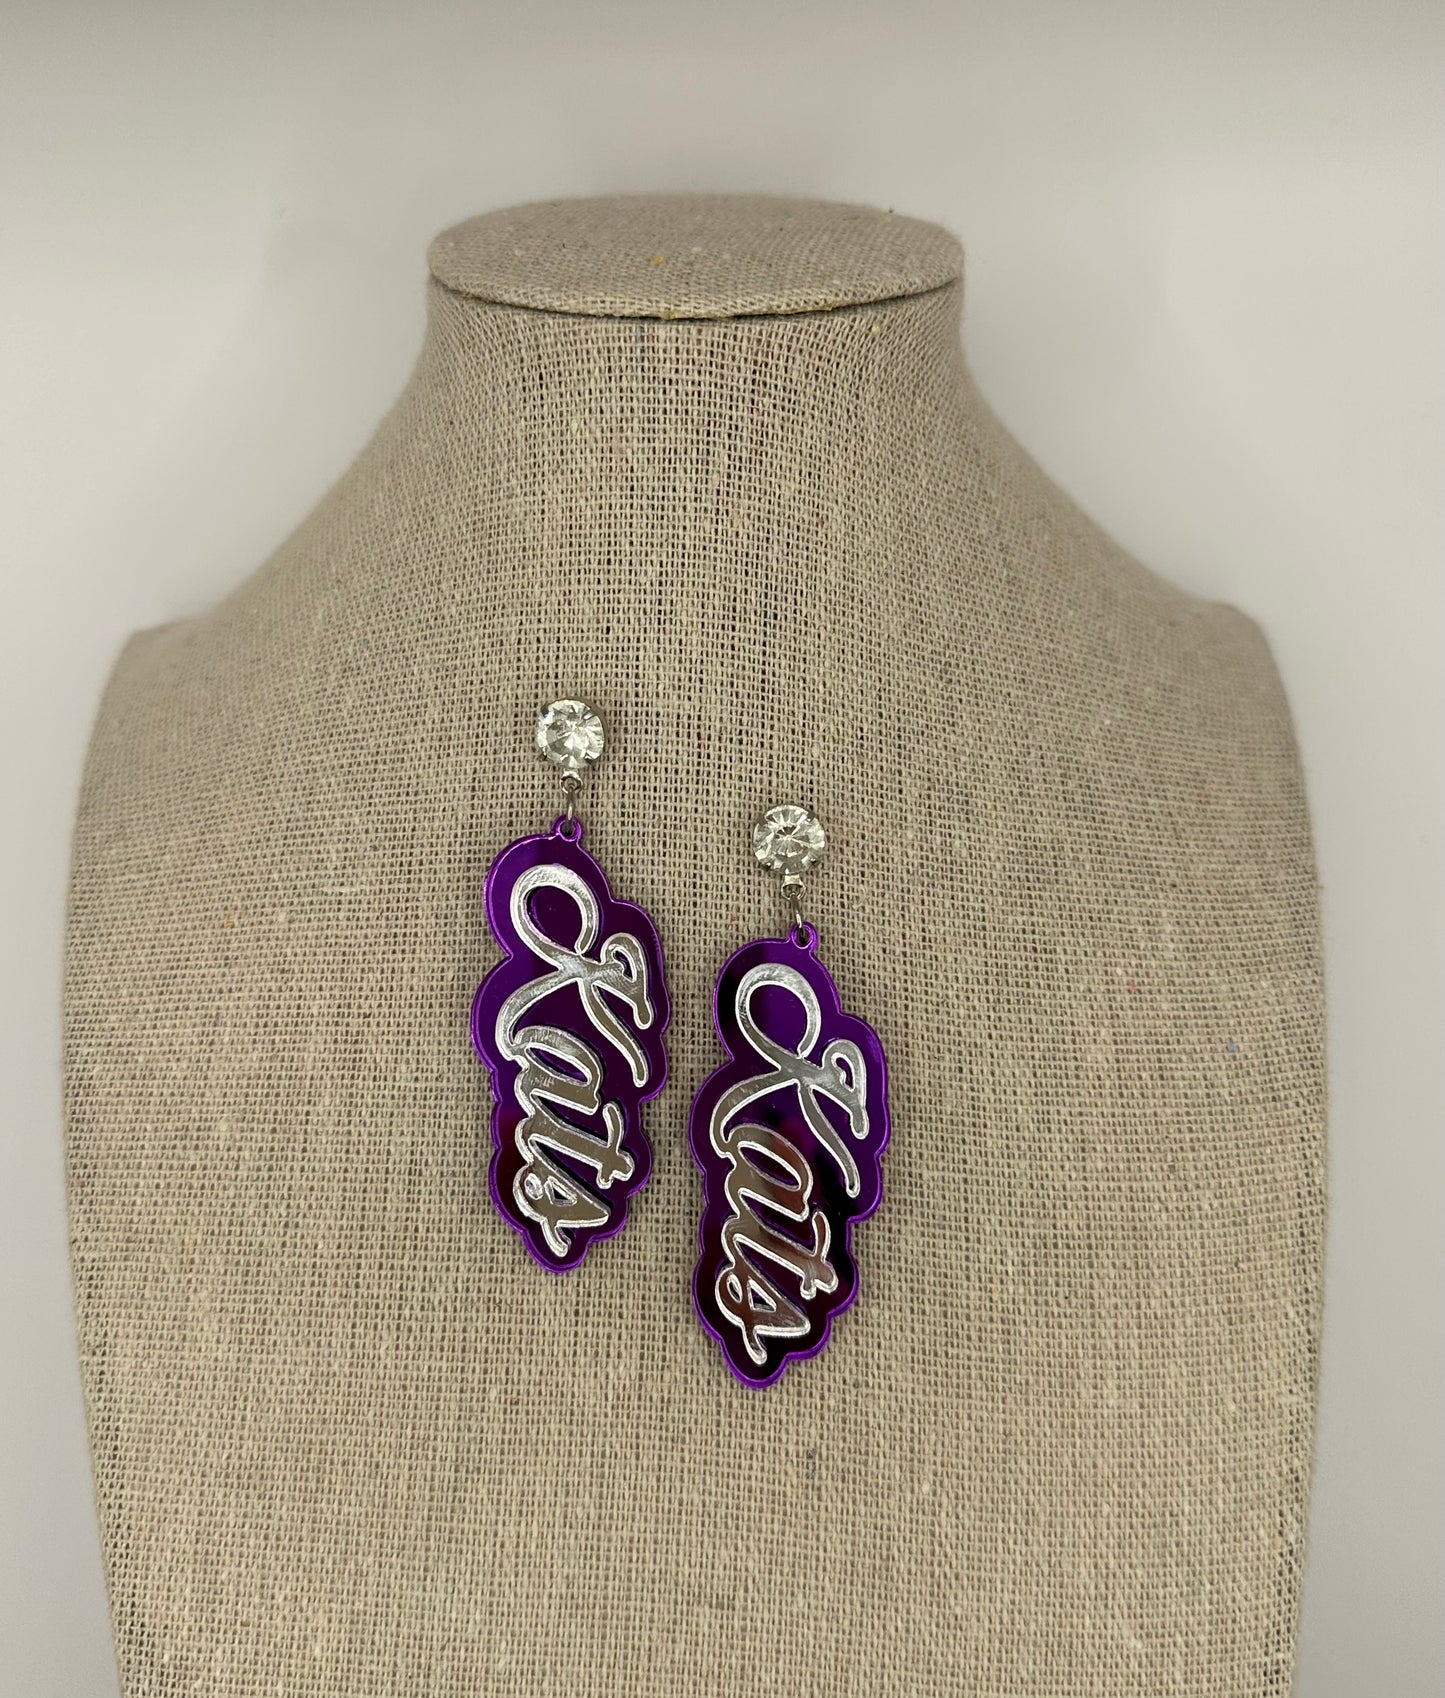 Kats- Purple & Silver Earrings